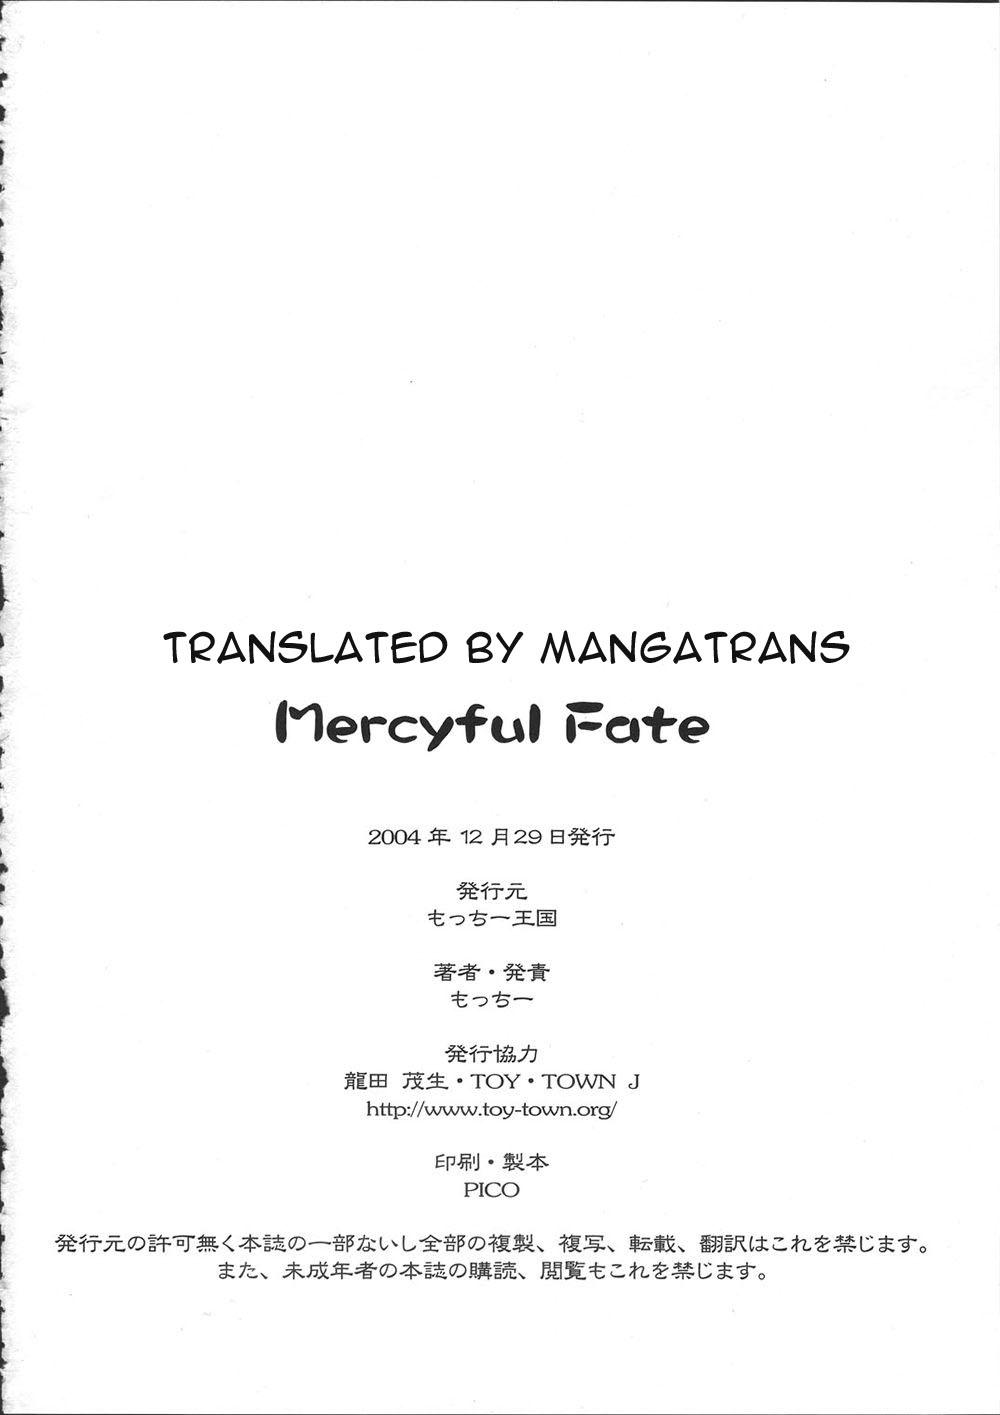 Mercyful Fate 25